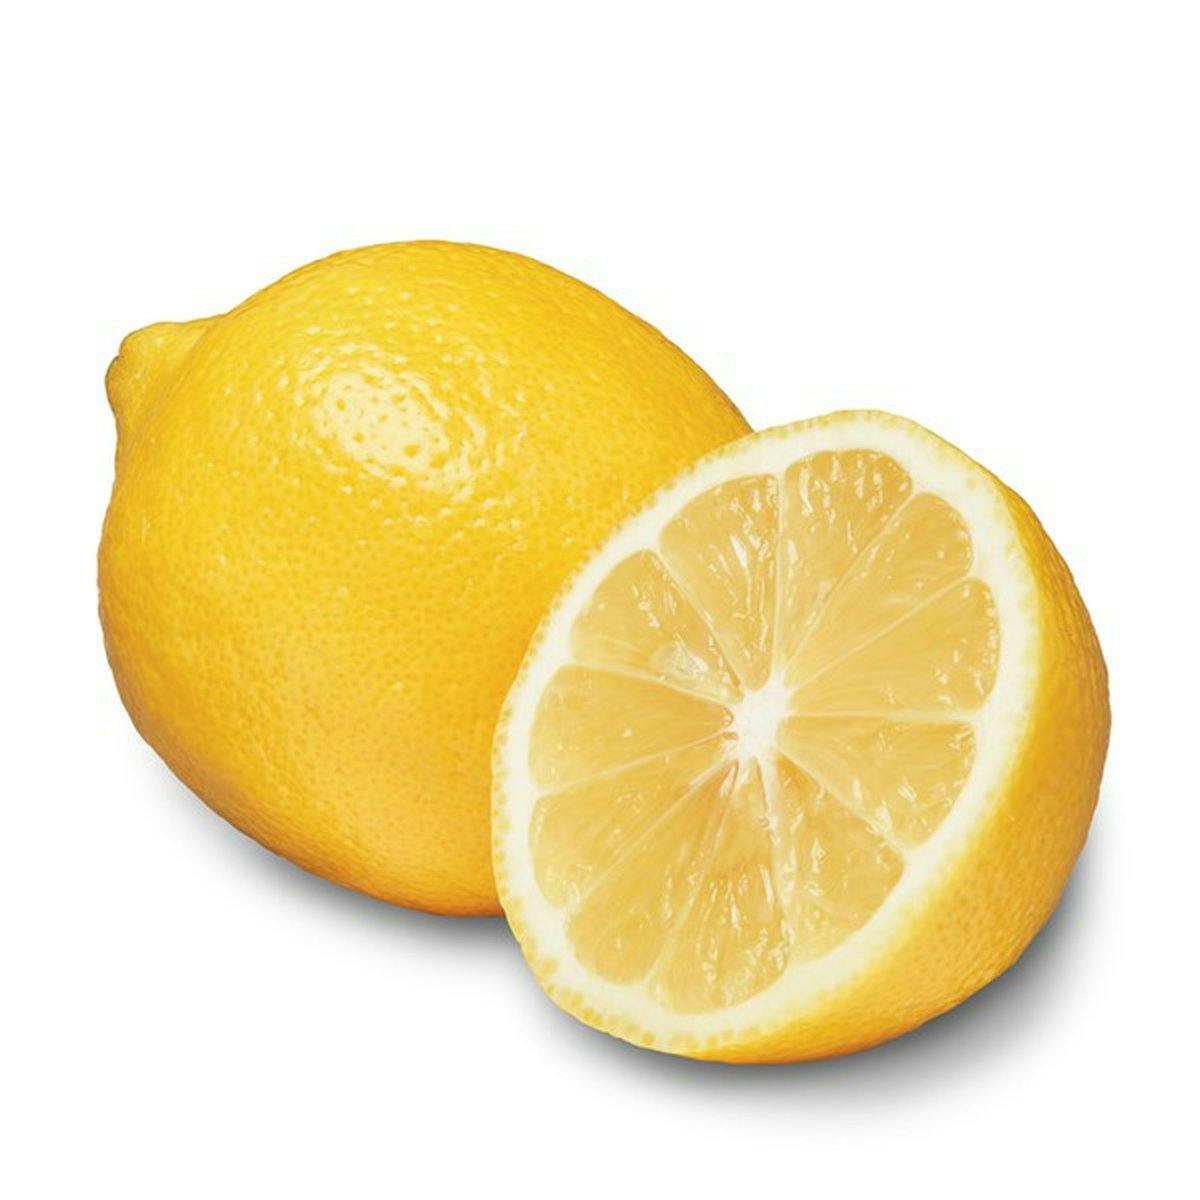 meyer lemon to finish